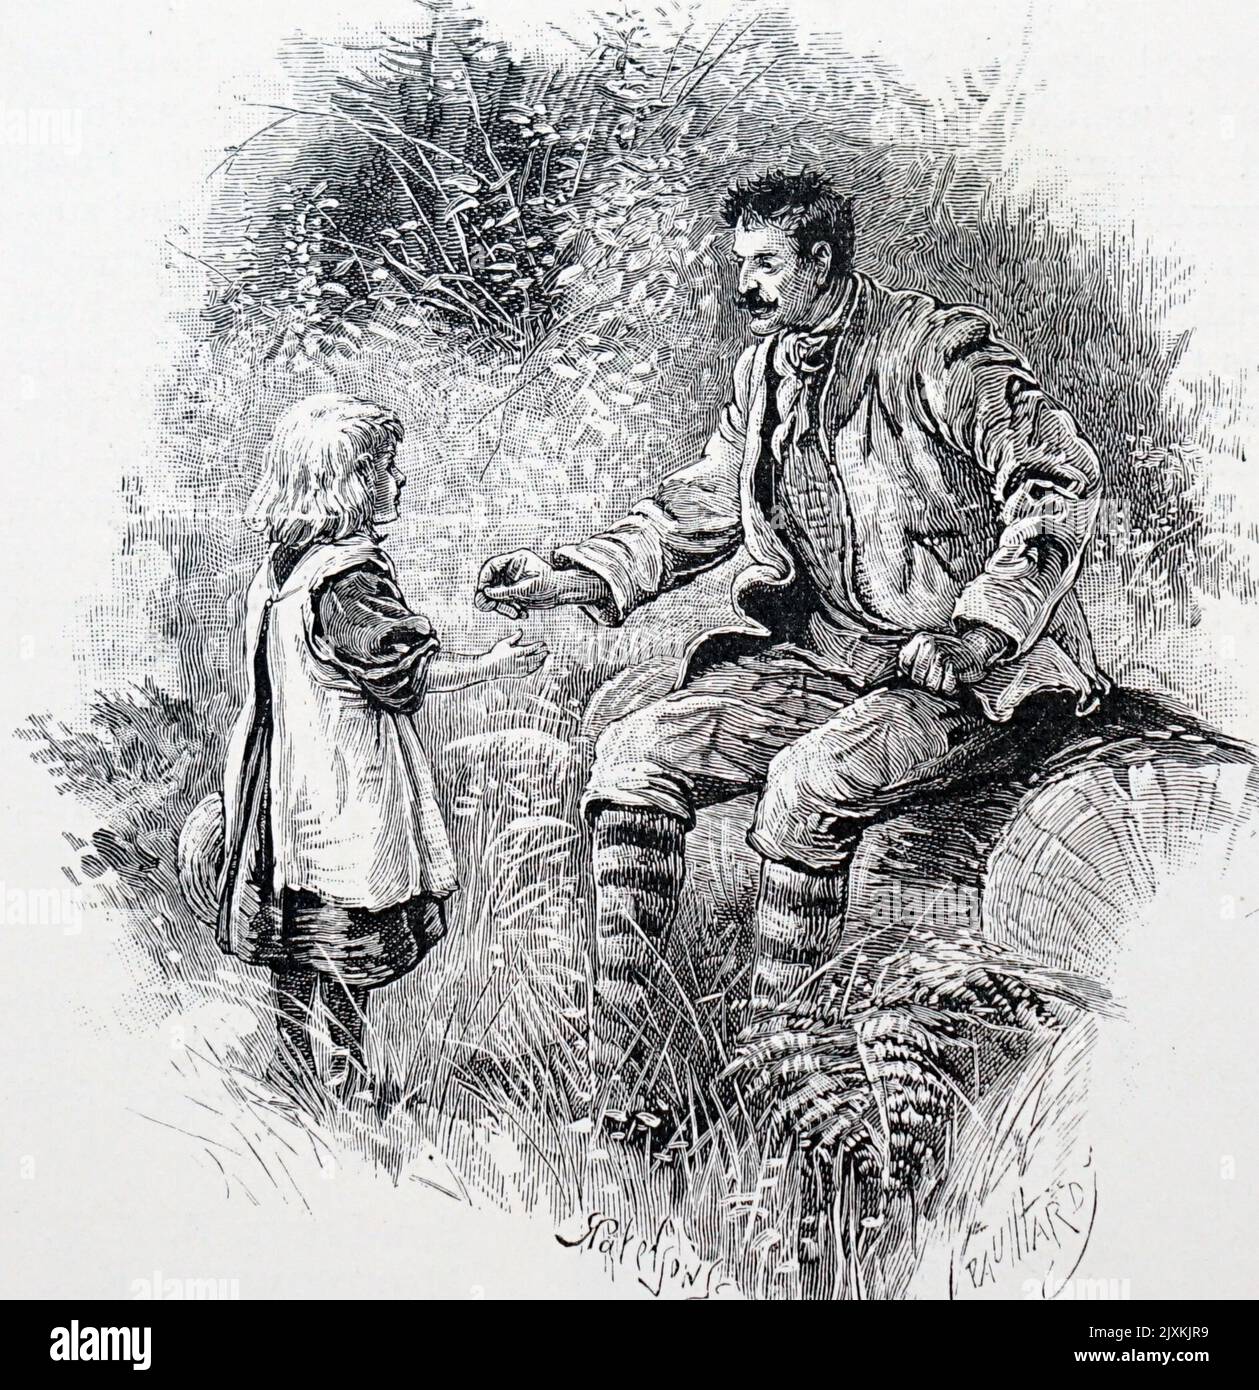 Ilustración que representa a un convicto escapado sobornando a un niño para alimentarlo. Data del siglo 19th Foto de stock